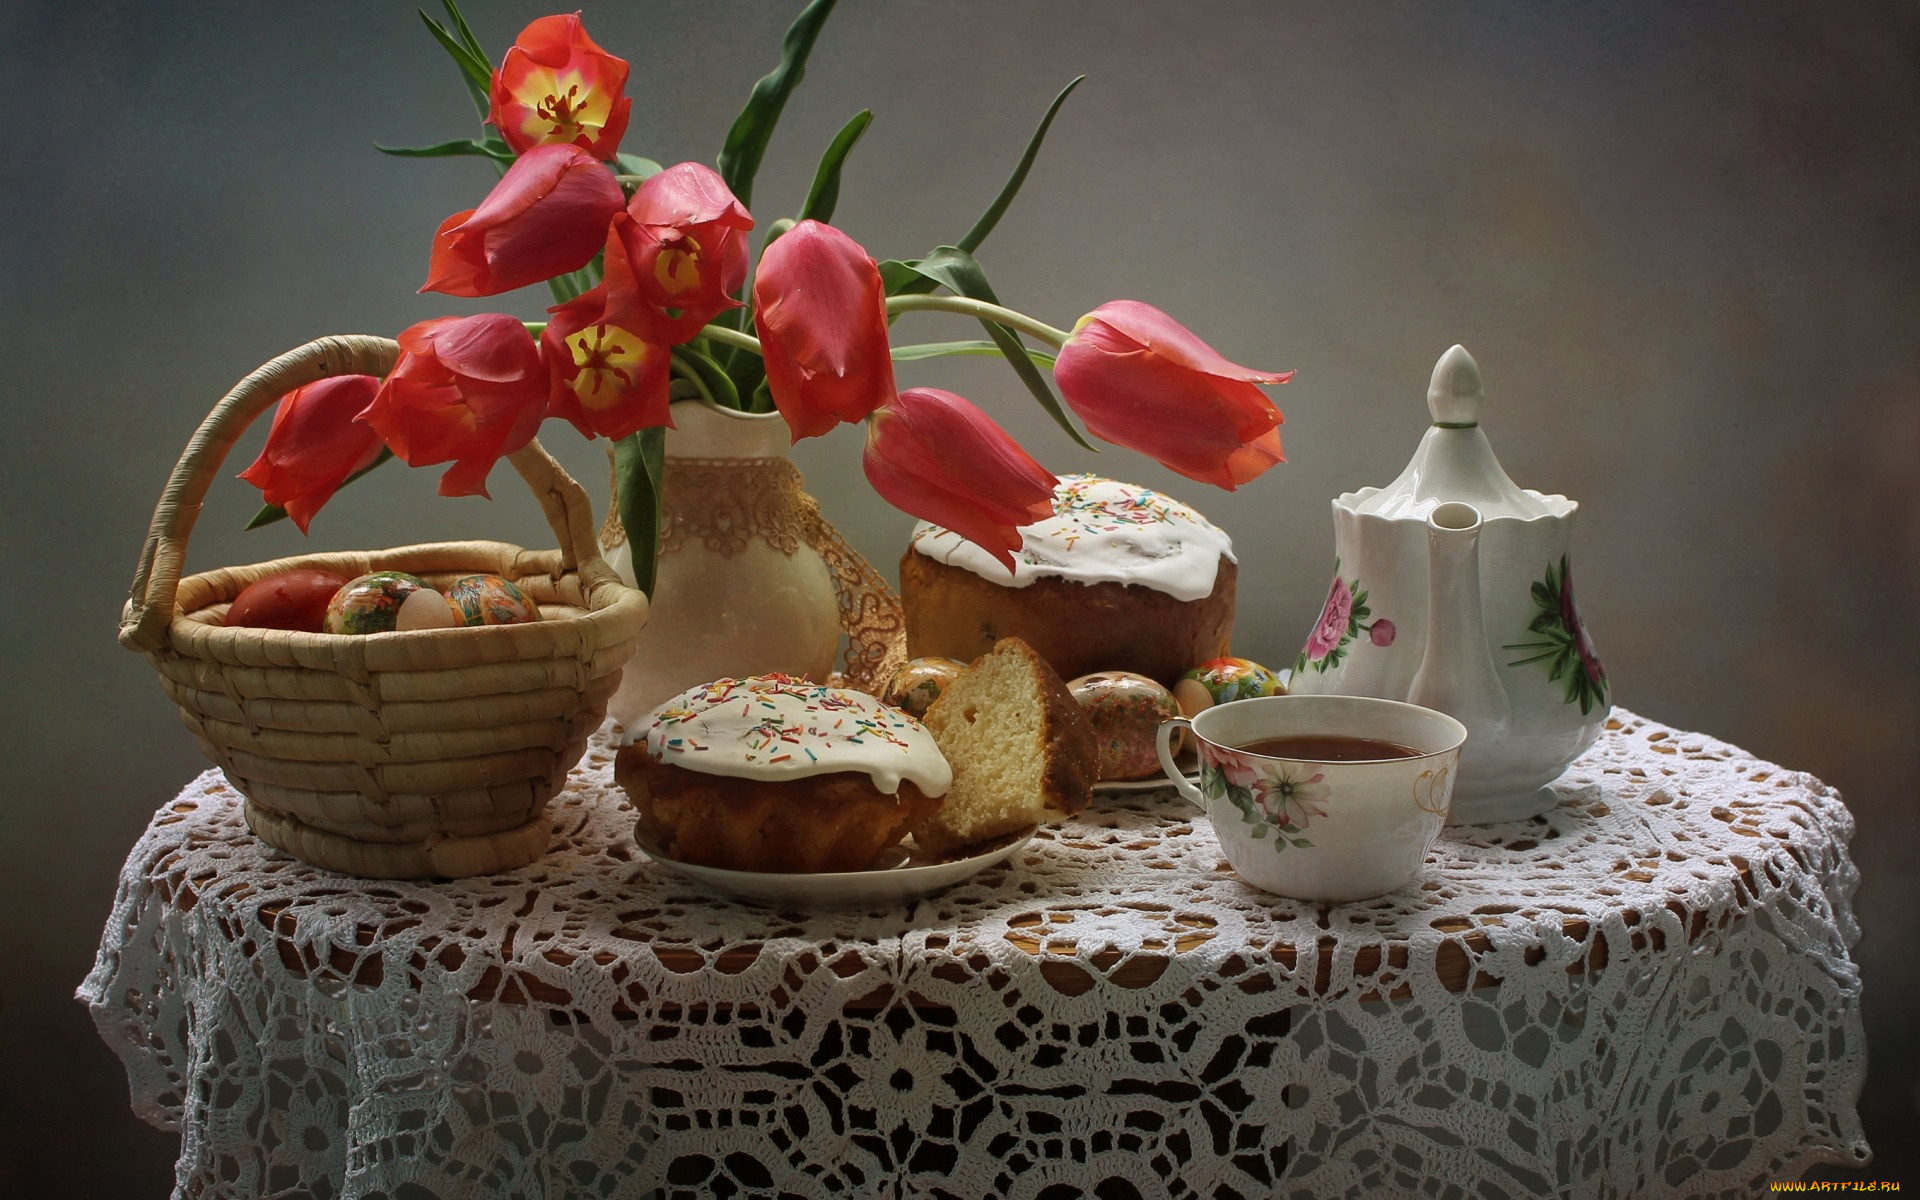 праздничные, пасха, чайник, корзина, стол, чай, чашка, красные, тюльпаны, натюрморт, яйца, скатерть, цветы, праздник, куличи, тарелки, ваза